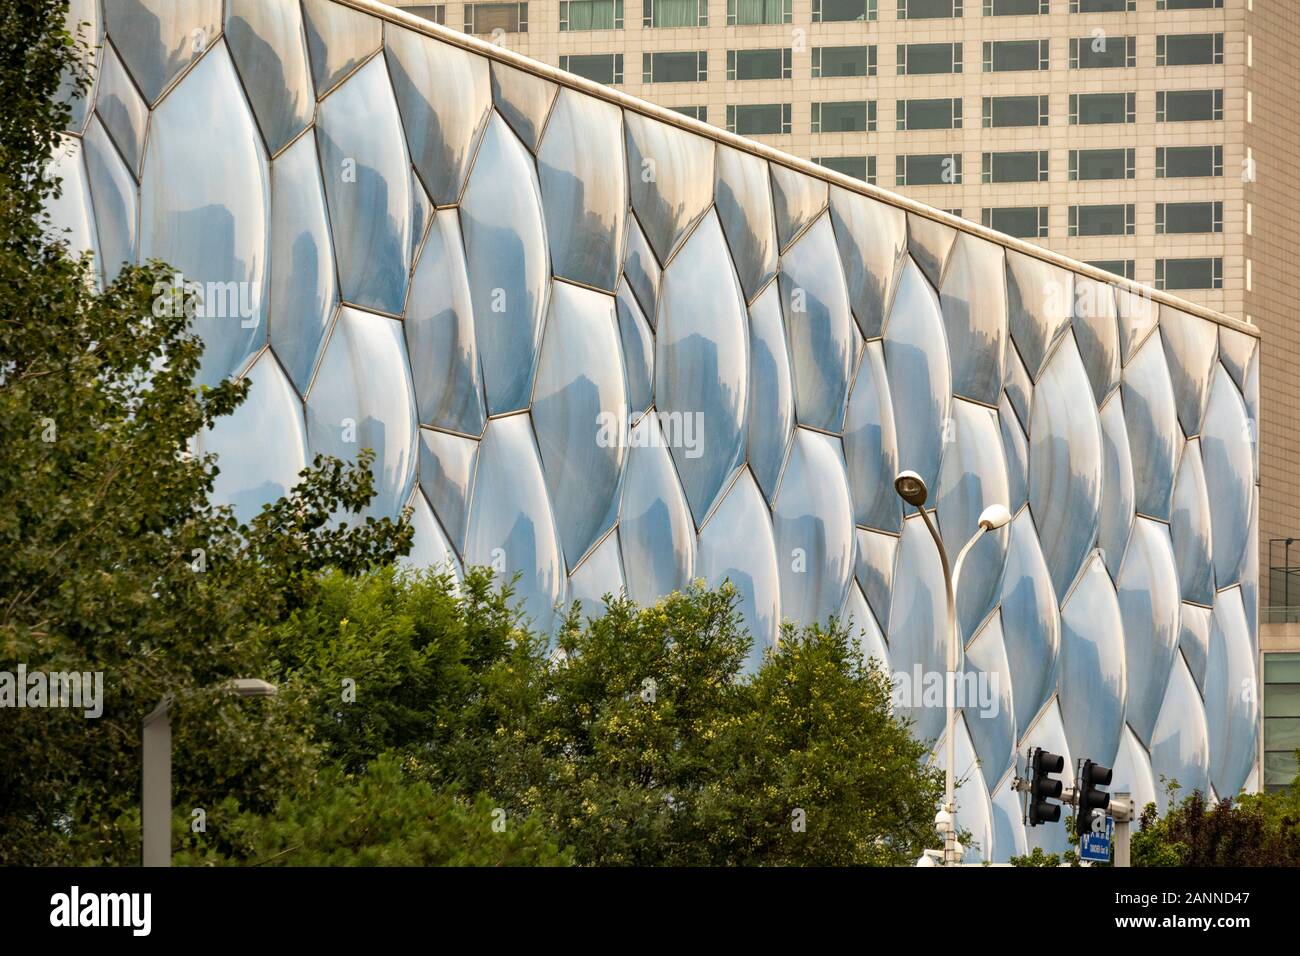 Détail de façade, le Centre national de natation de Pékin, également connu sous le nom de Cube d'eau, Beijing, Chine Banque D'Images